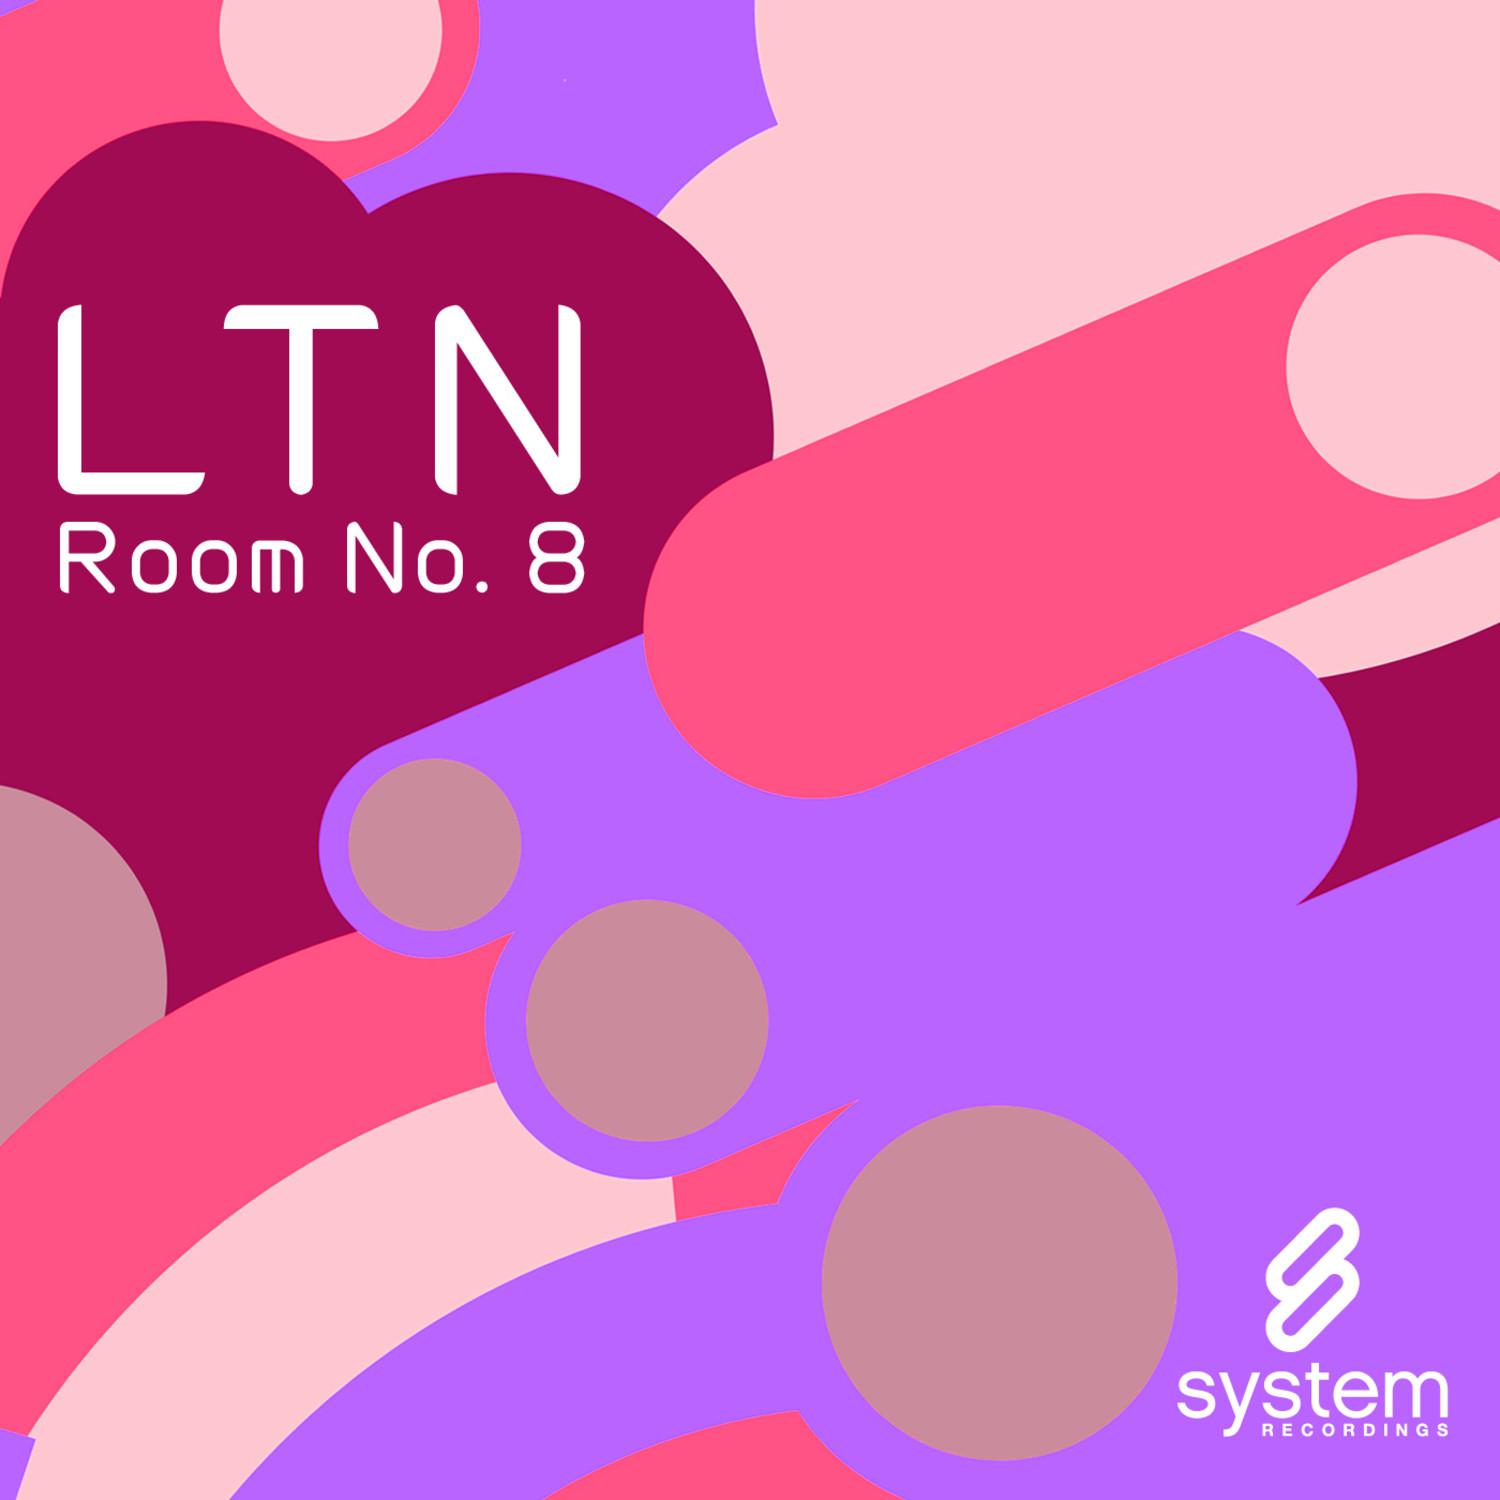 Room No. 8